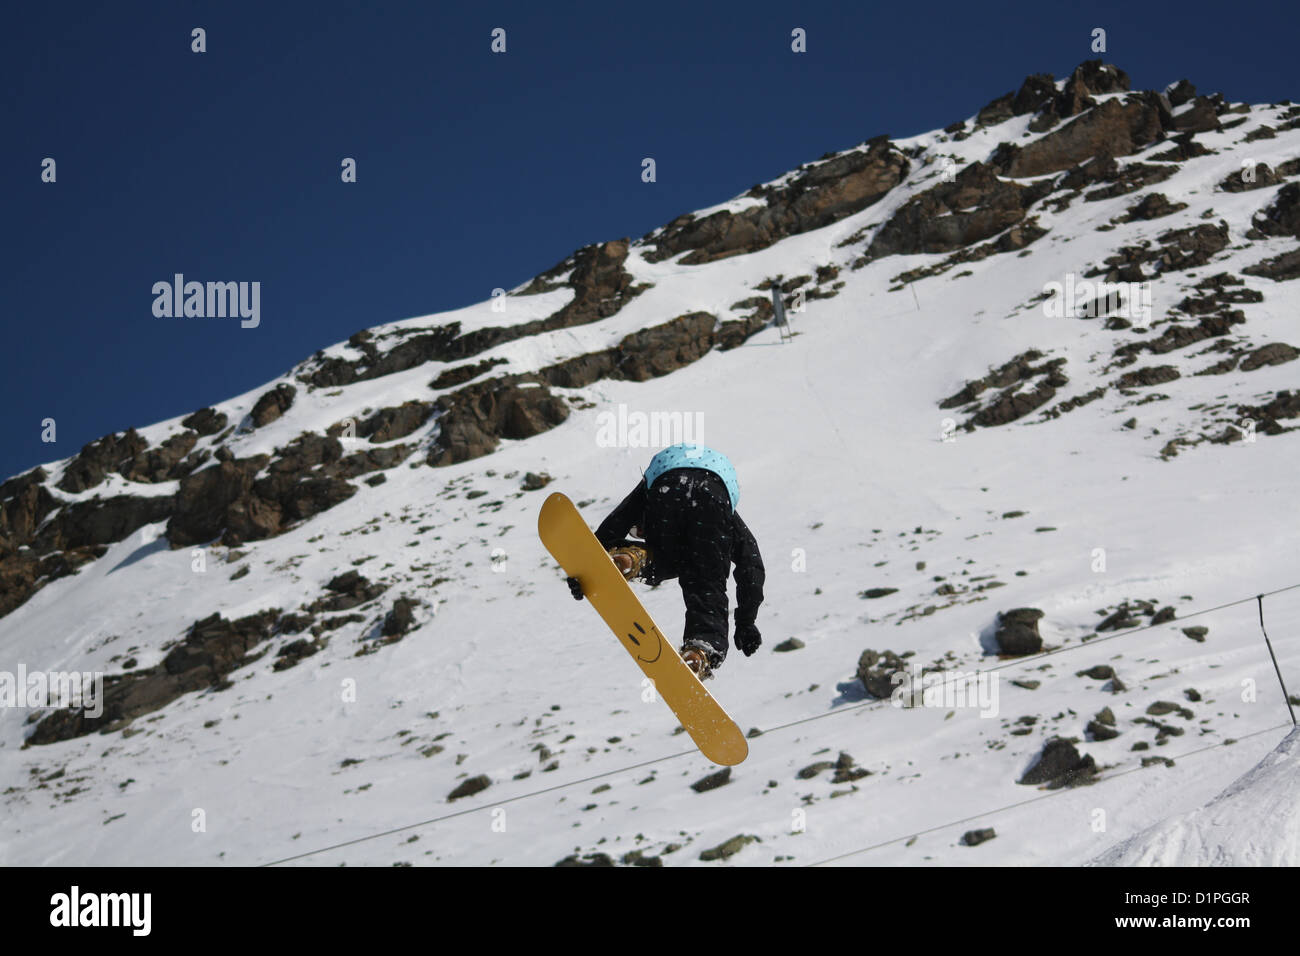 Male snowboarder dans l'air contre un décor de montagnes. Le snowboard est jaune avec un smiley face visible sur la face inférieure. Banque D'Images